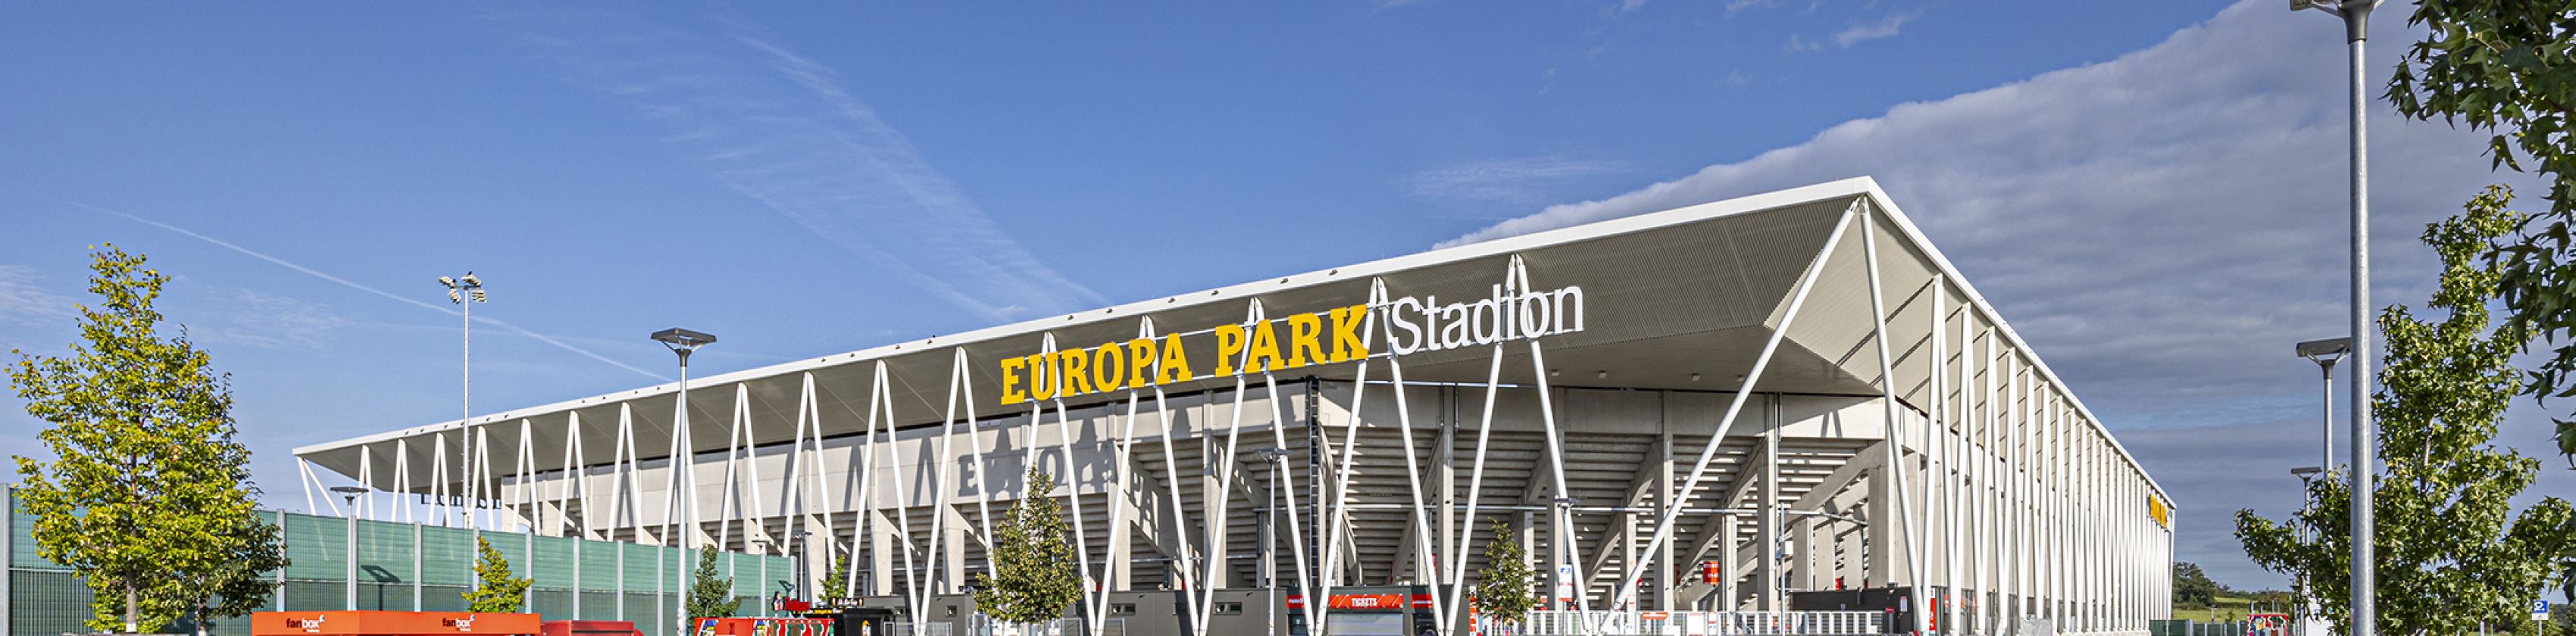 Europa-Park-Stadion-FWTM-Spiegelhalter.6